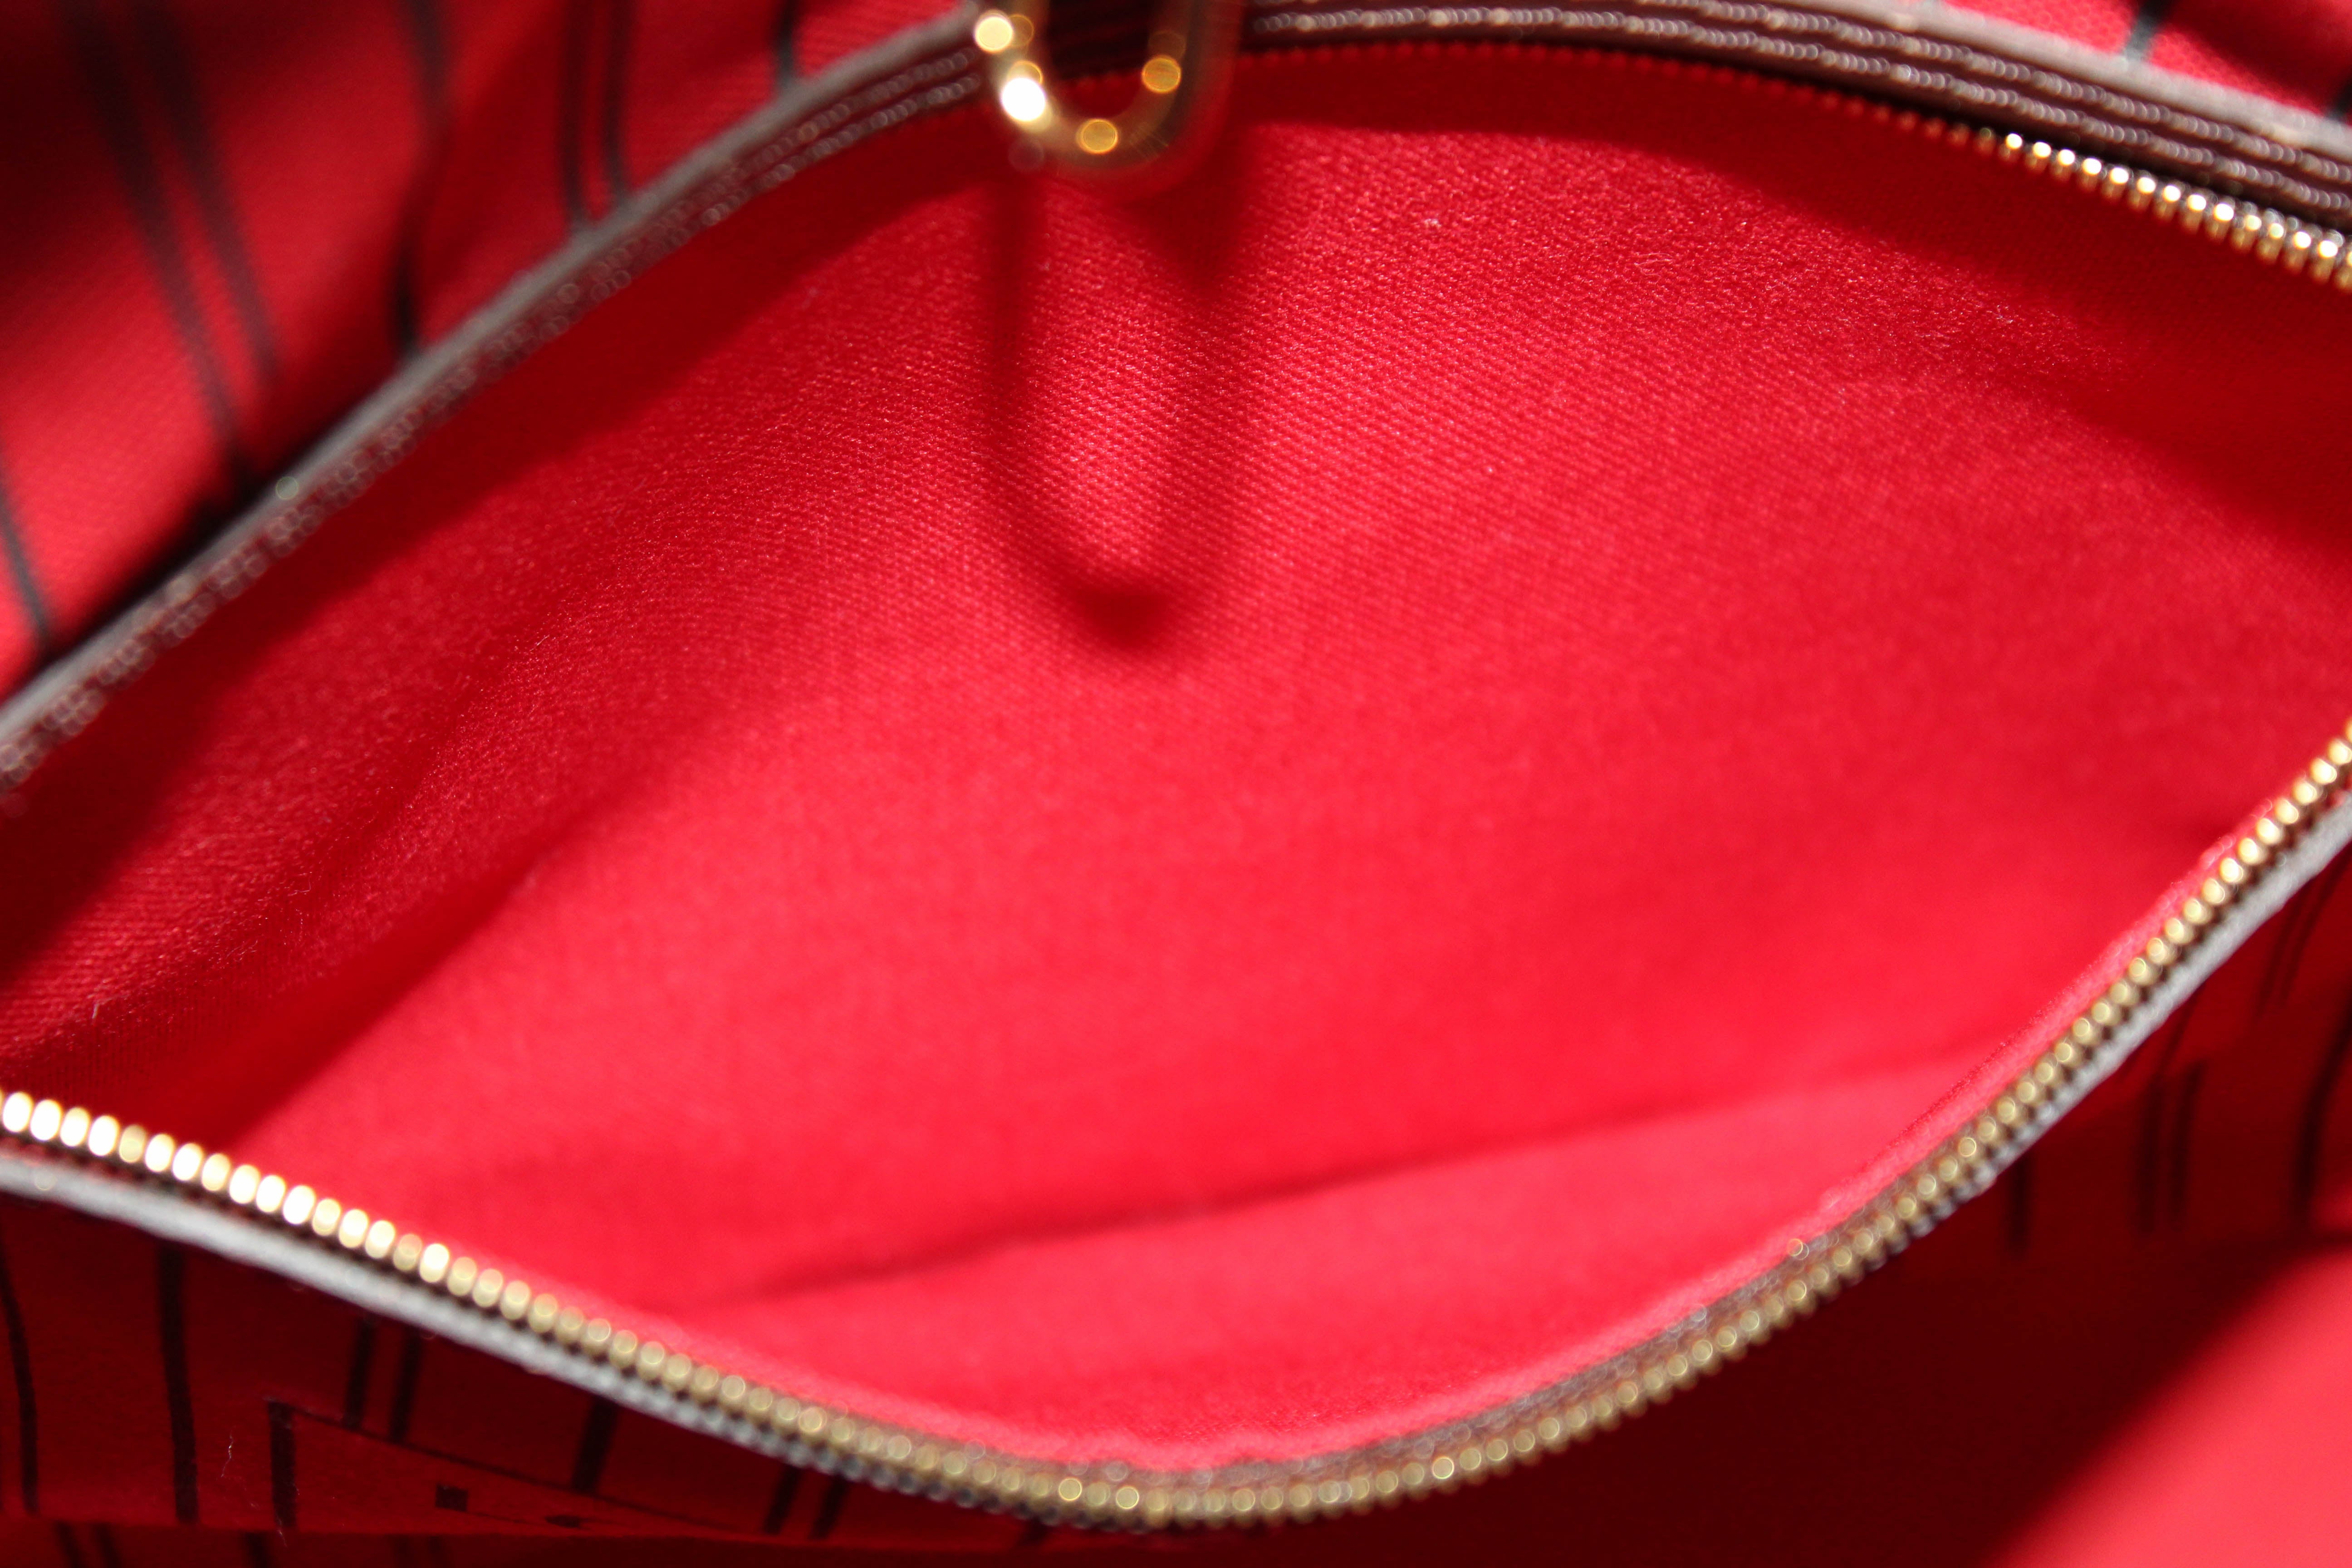 Authentic Louis Vuitton Damier Ebene Canvas Neverfull Tote Shoulder Bag